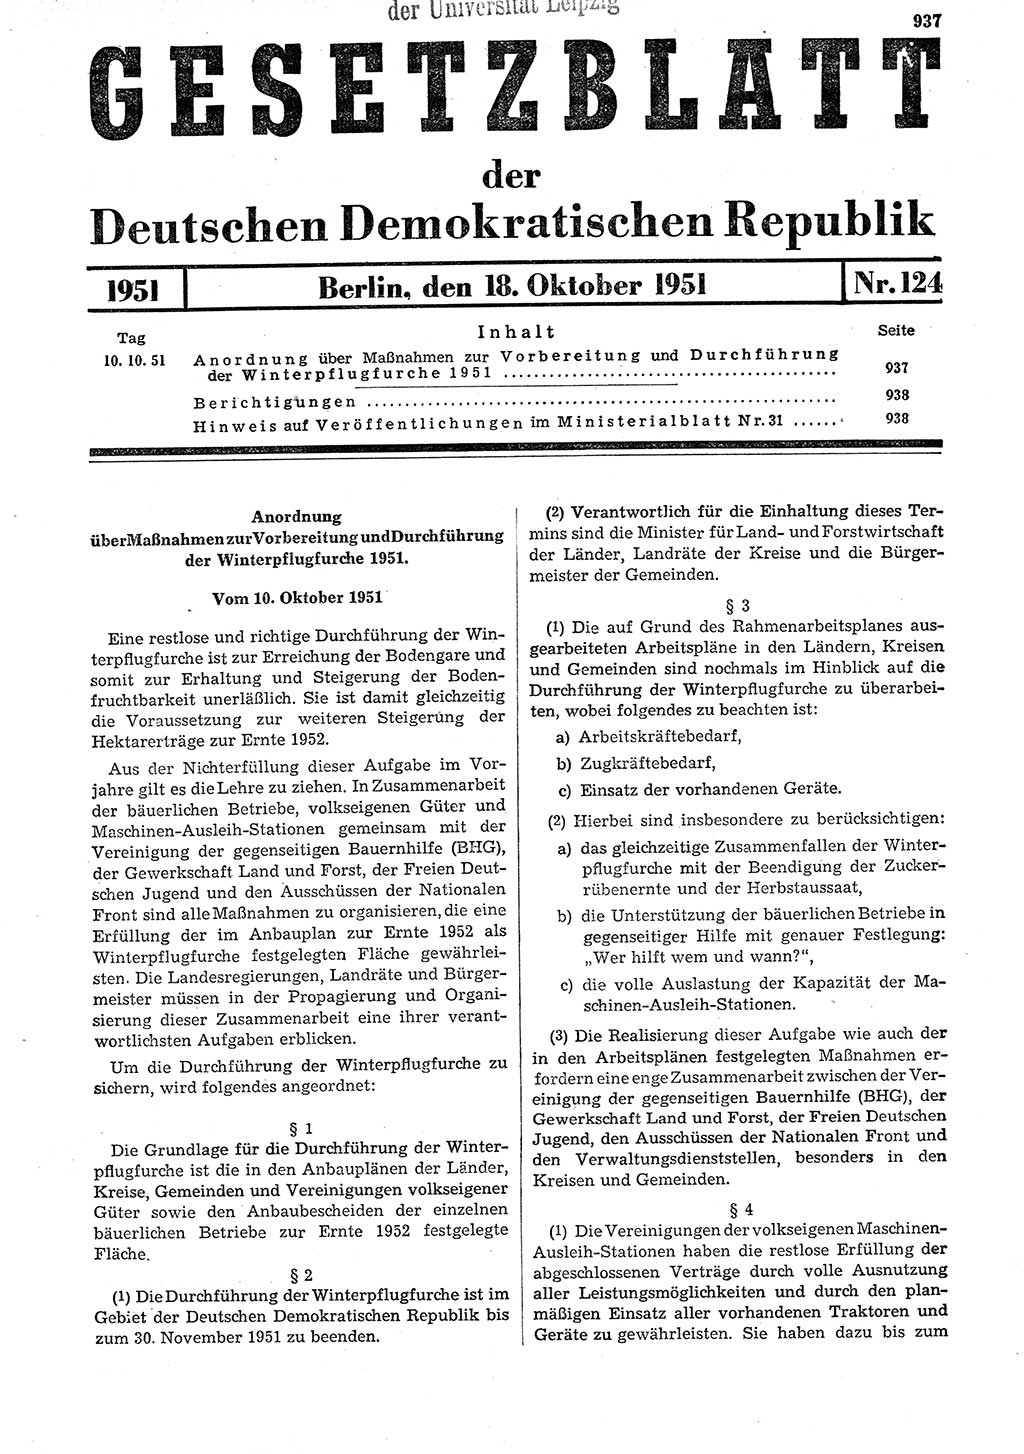 Gesetzblatt (GBl.) der Deutschen Demokratischen Republik (DDR) 1951, Seite 937 (GBl. DDR 1951, S. 937)